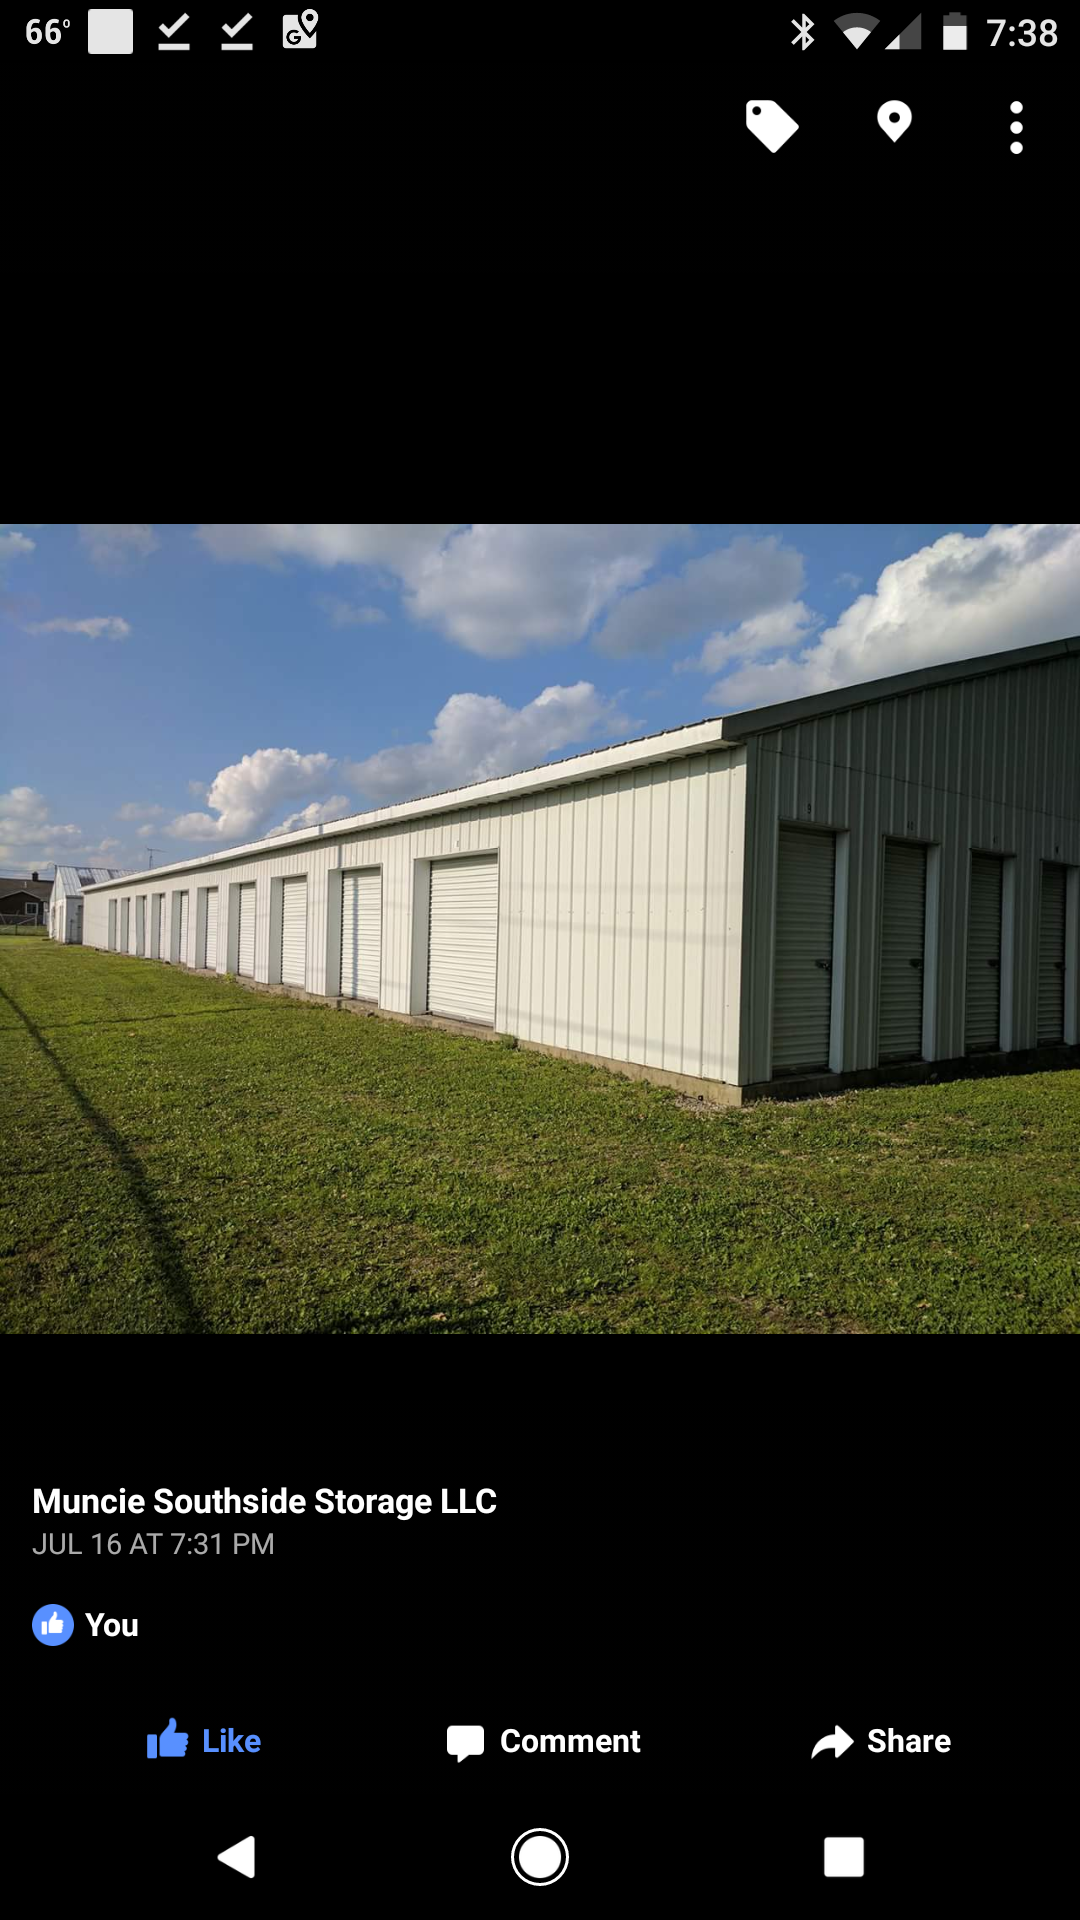 Muncie Southside Storage LLC